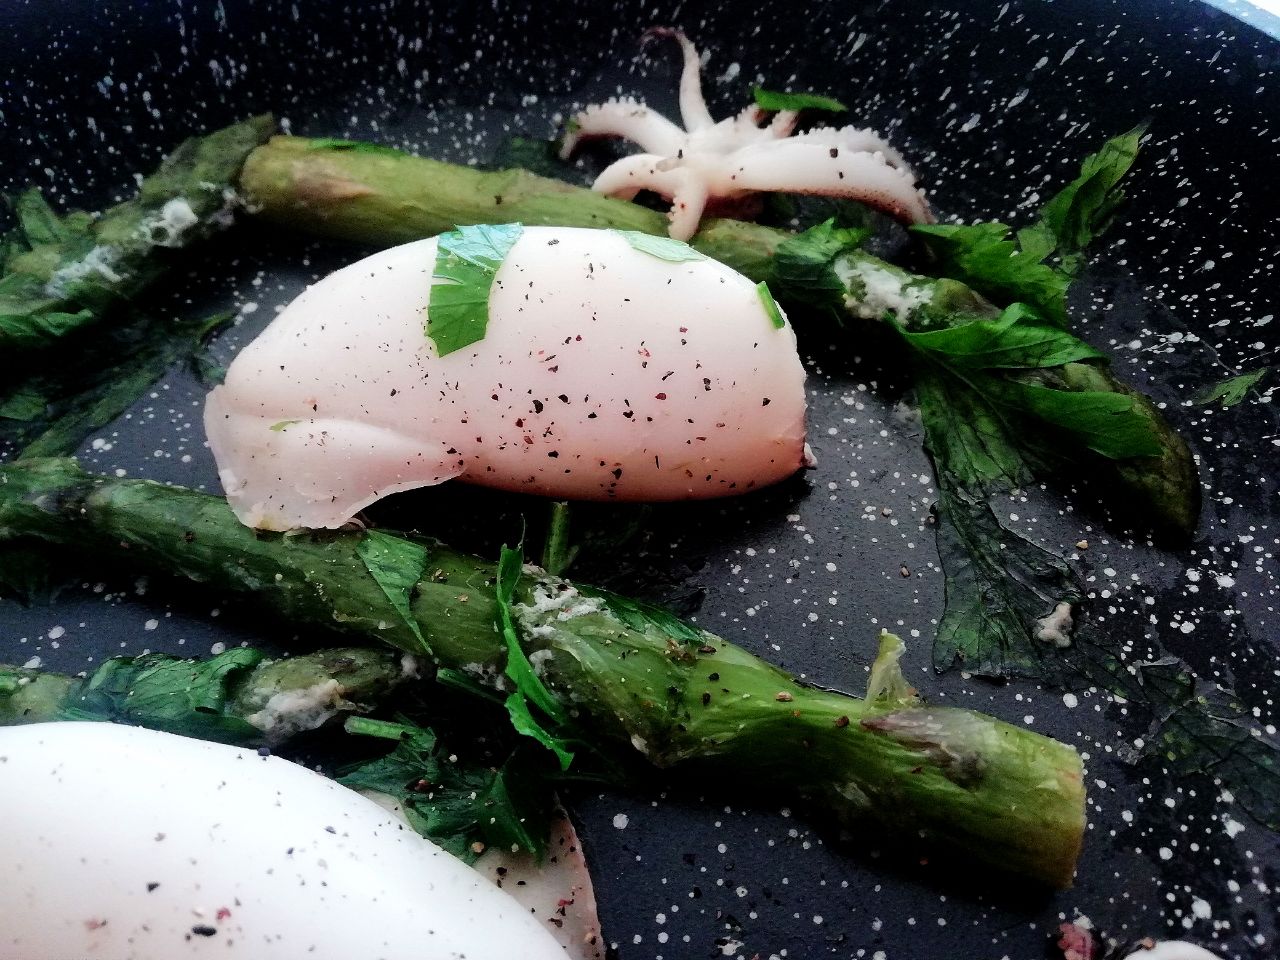 Secondi piatti a base di pesce: calamari in padella con asparagi e olio evo!